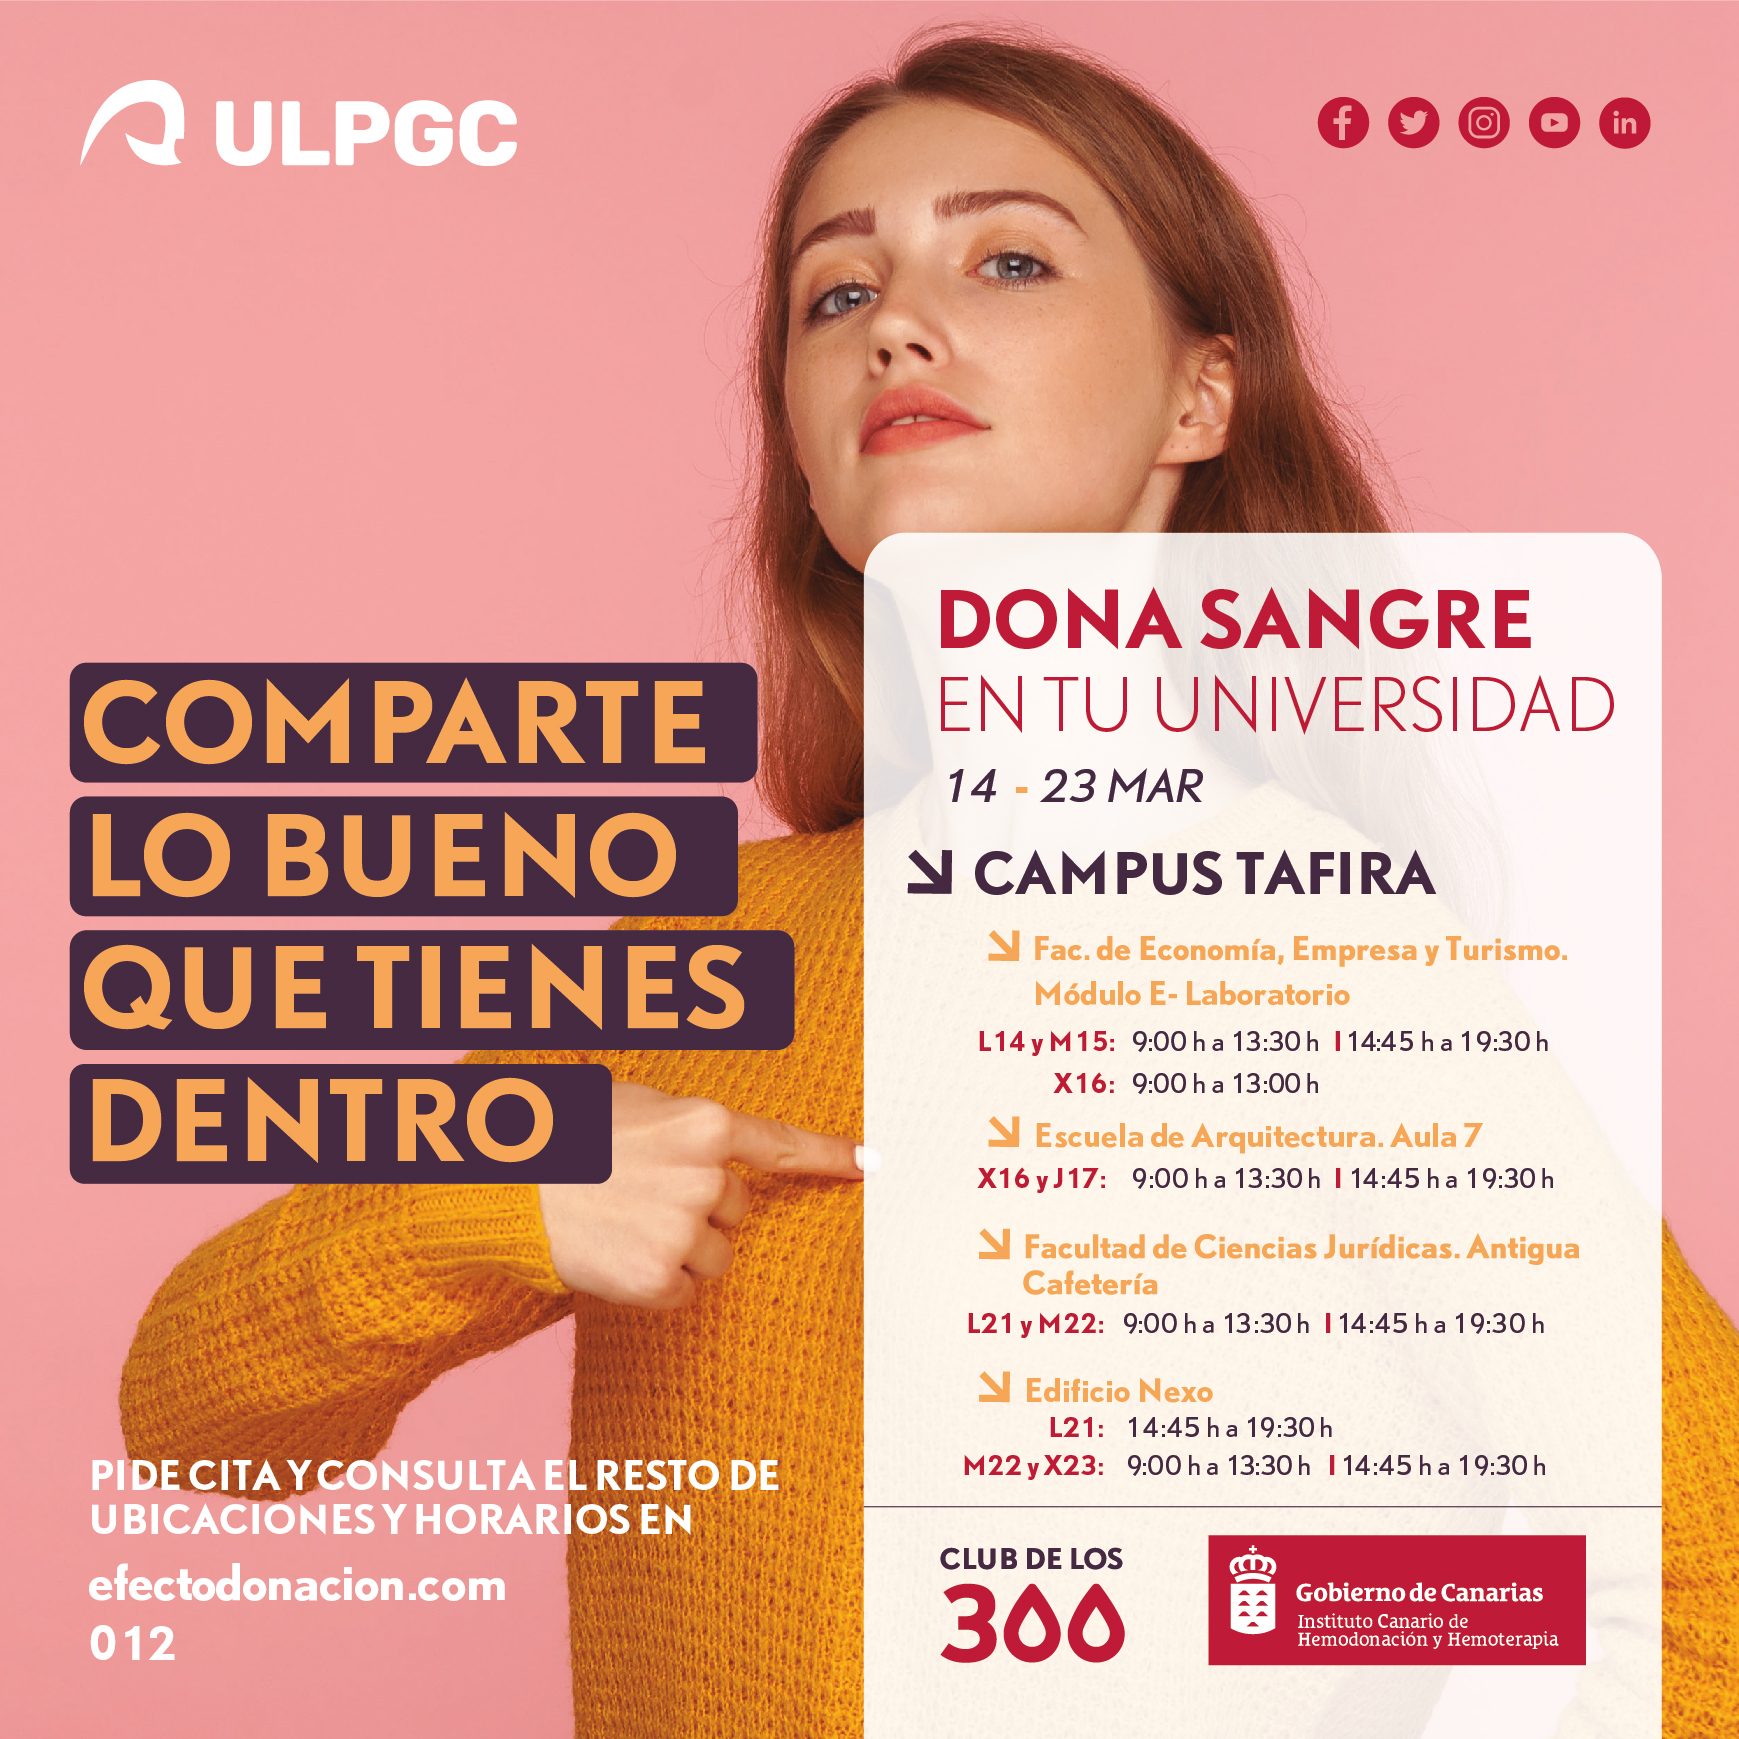 Continúa la campaña de donación de sangre en la ULPGC | ULPGC - Universidad Las Palmas de Gran Canaria